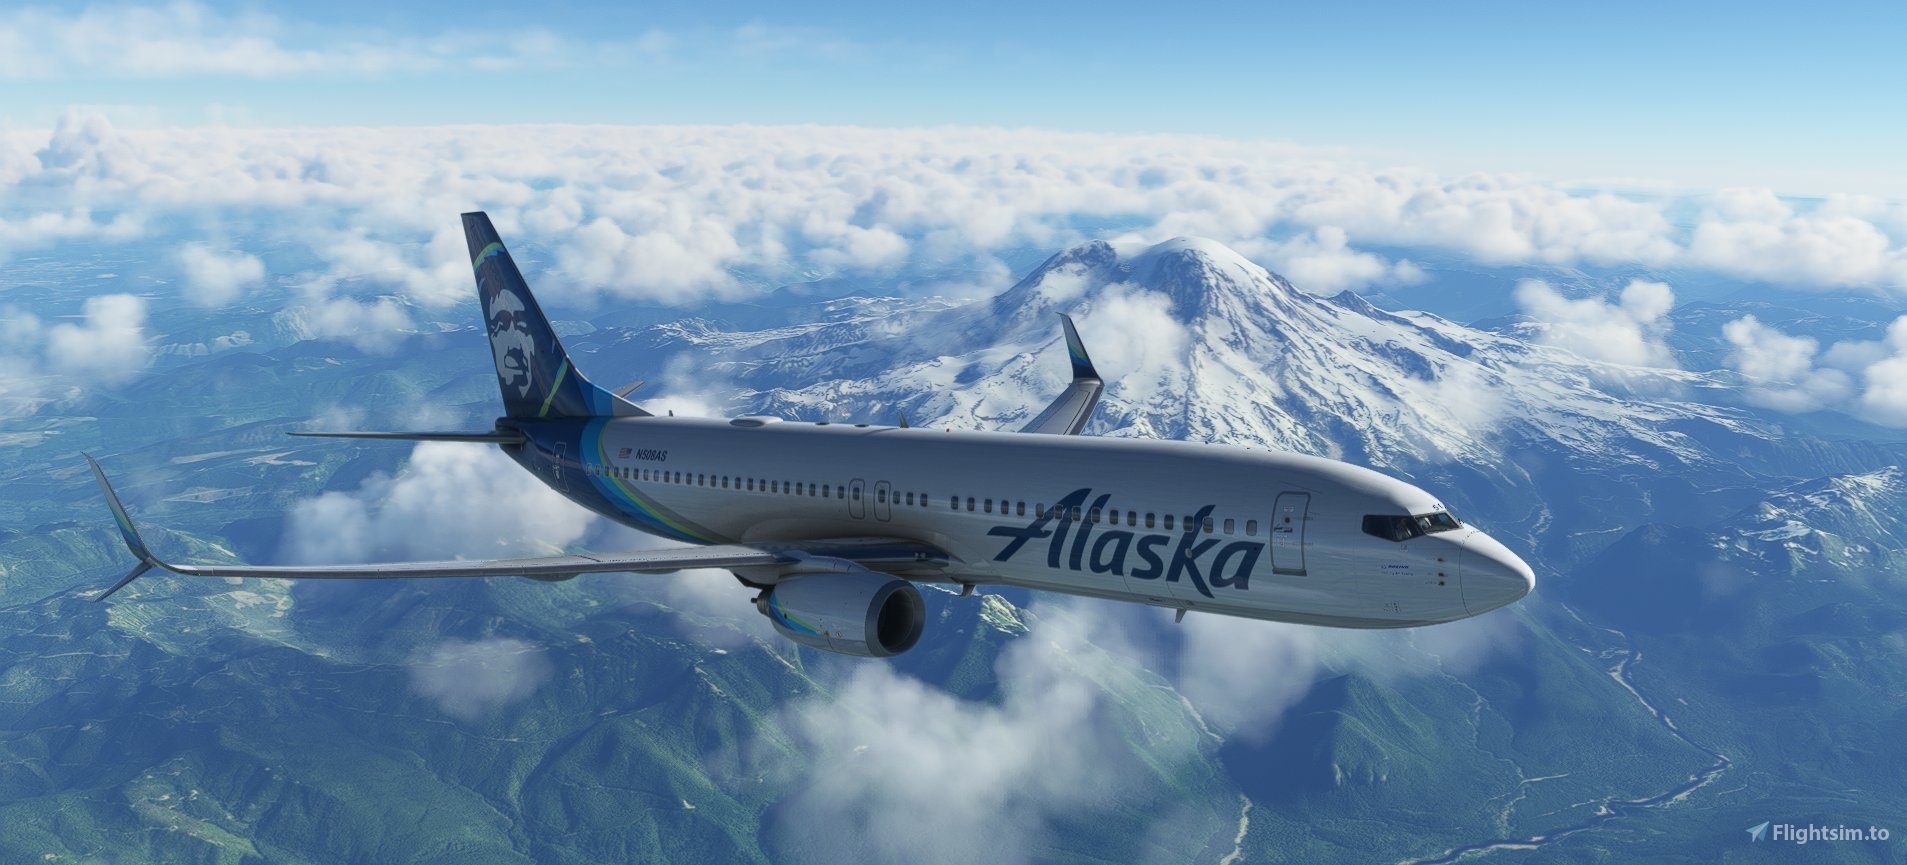 Alaska Airlines PMDG Boeing 737-800 New Eskimo for Microsoft 